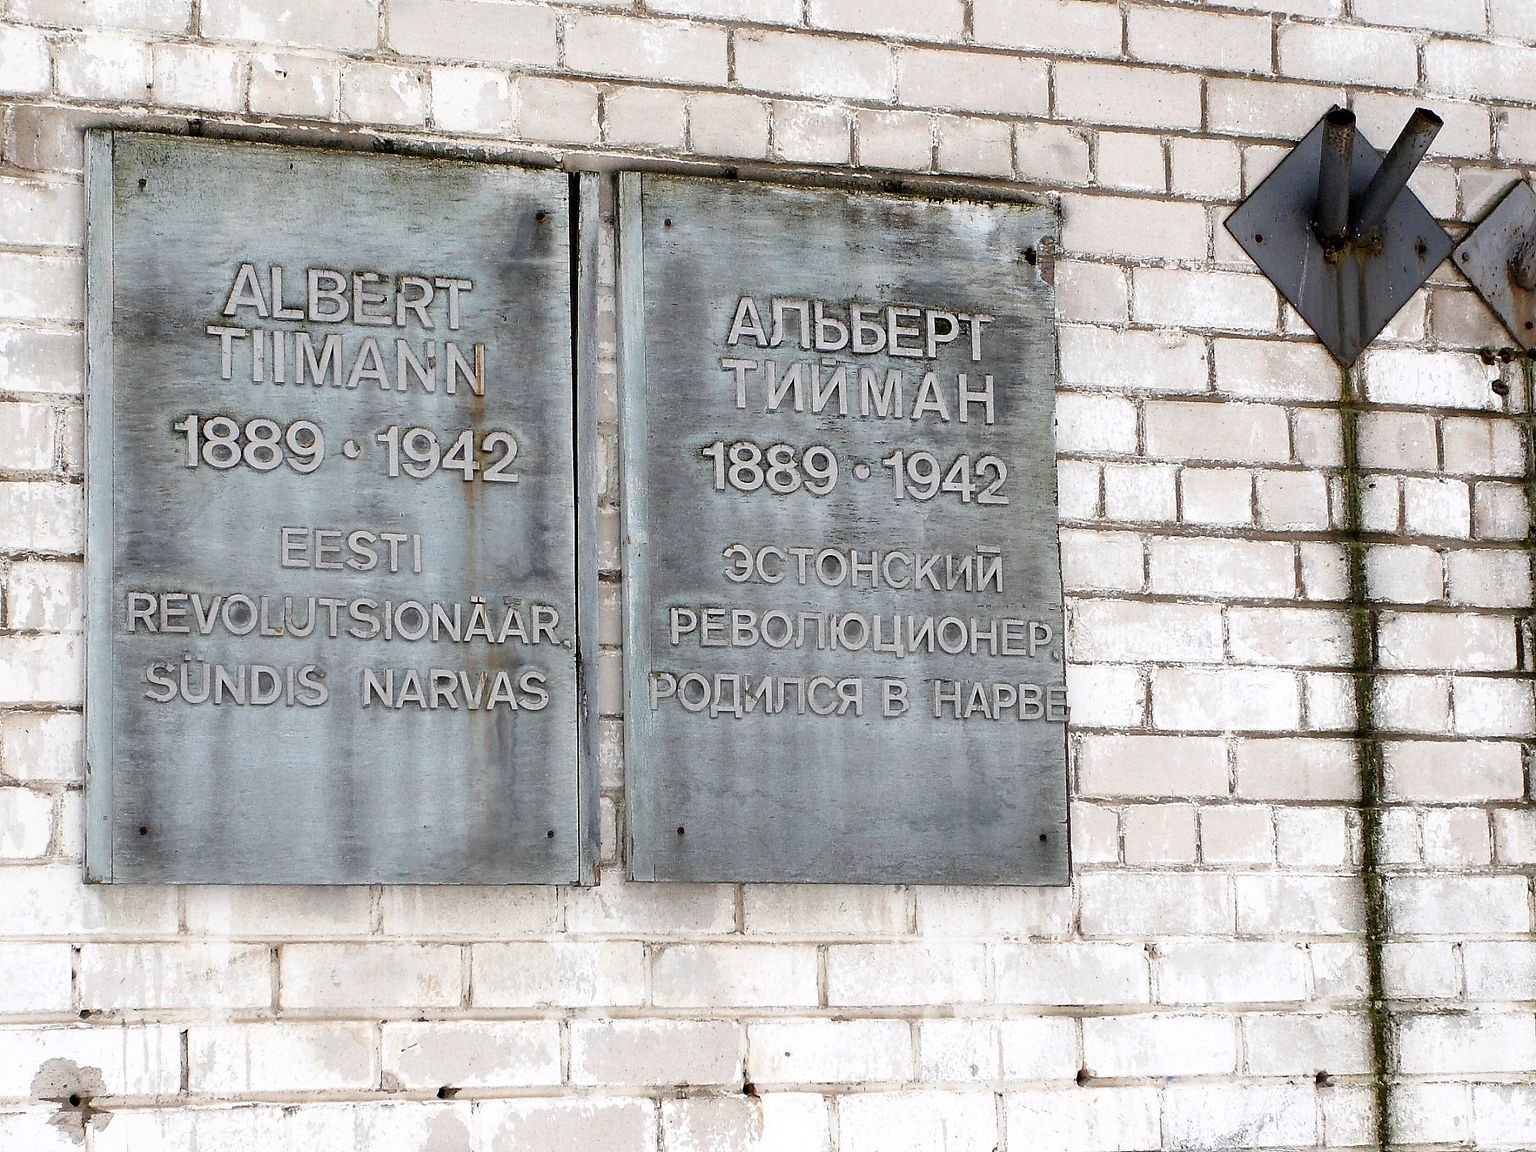 Памятные таблички, некогда имевшиеся на нарвской улице имени Альберта-Аугуста Тиймана.